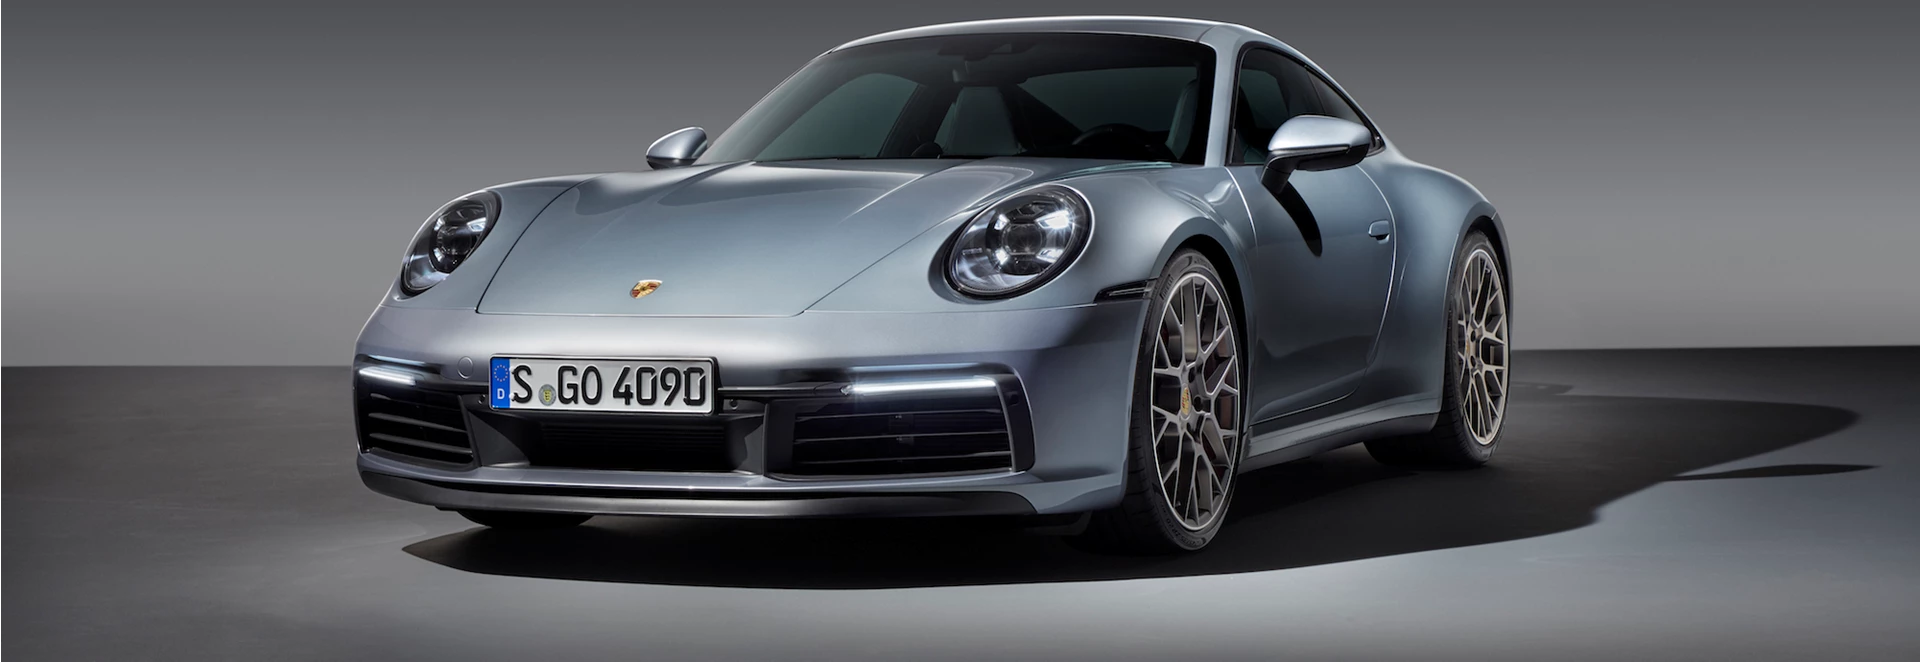 Eighth-generation Porsche 911 revealed